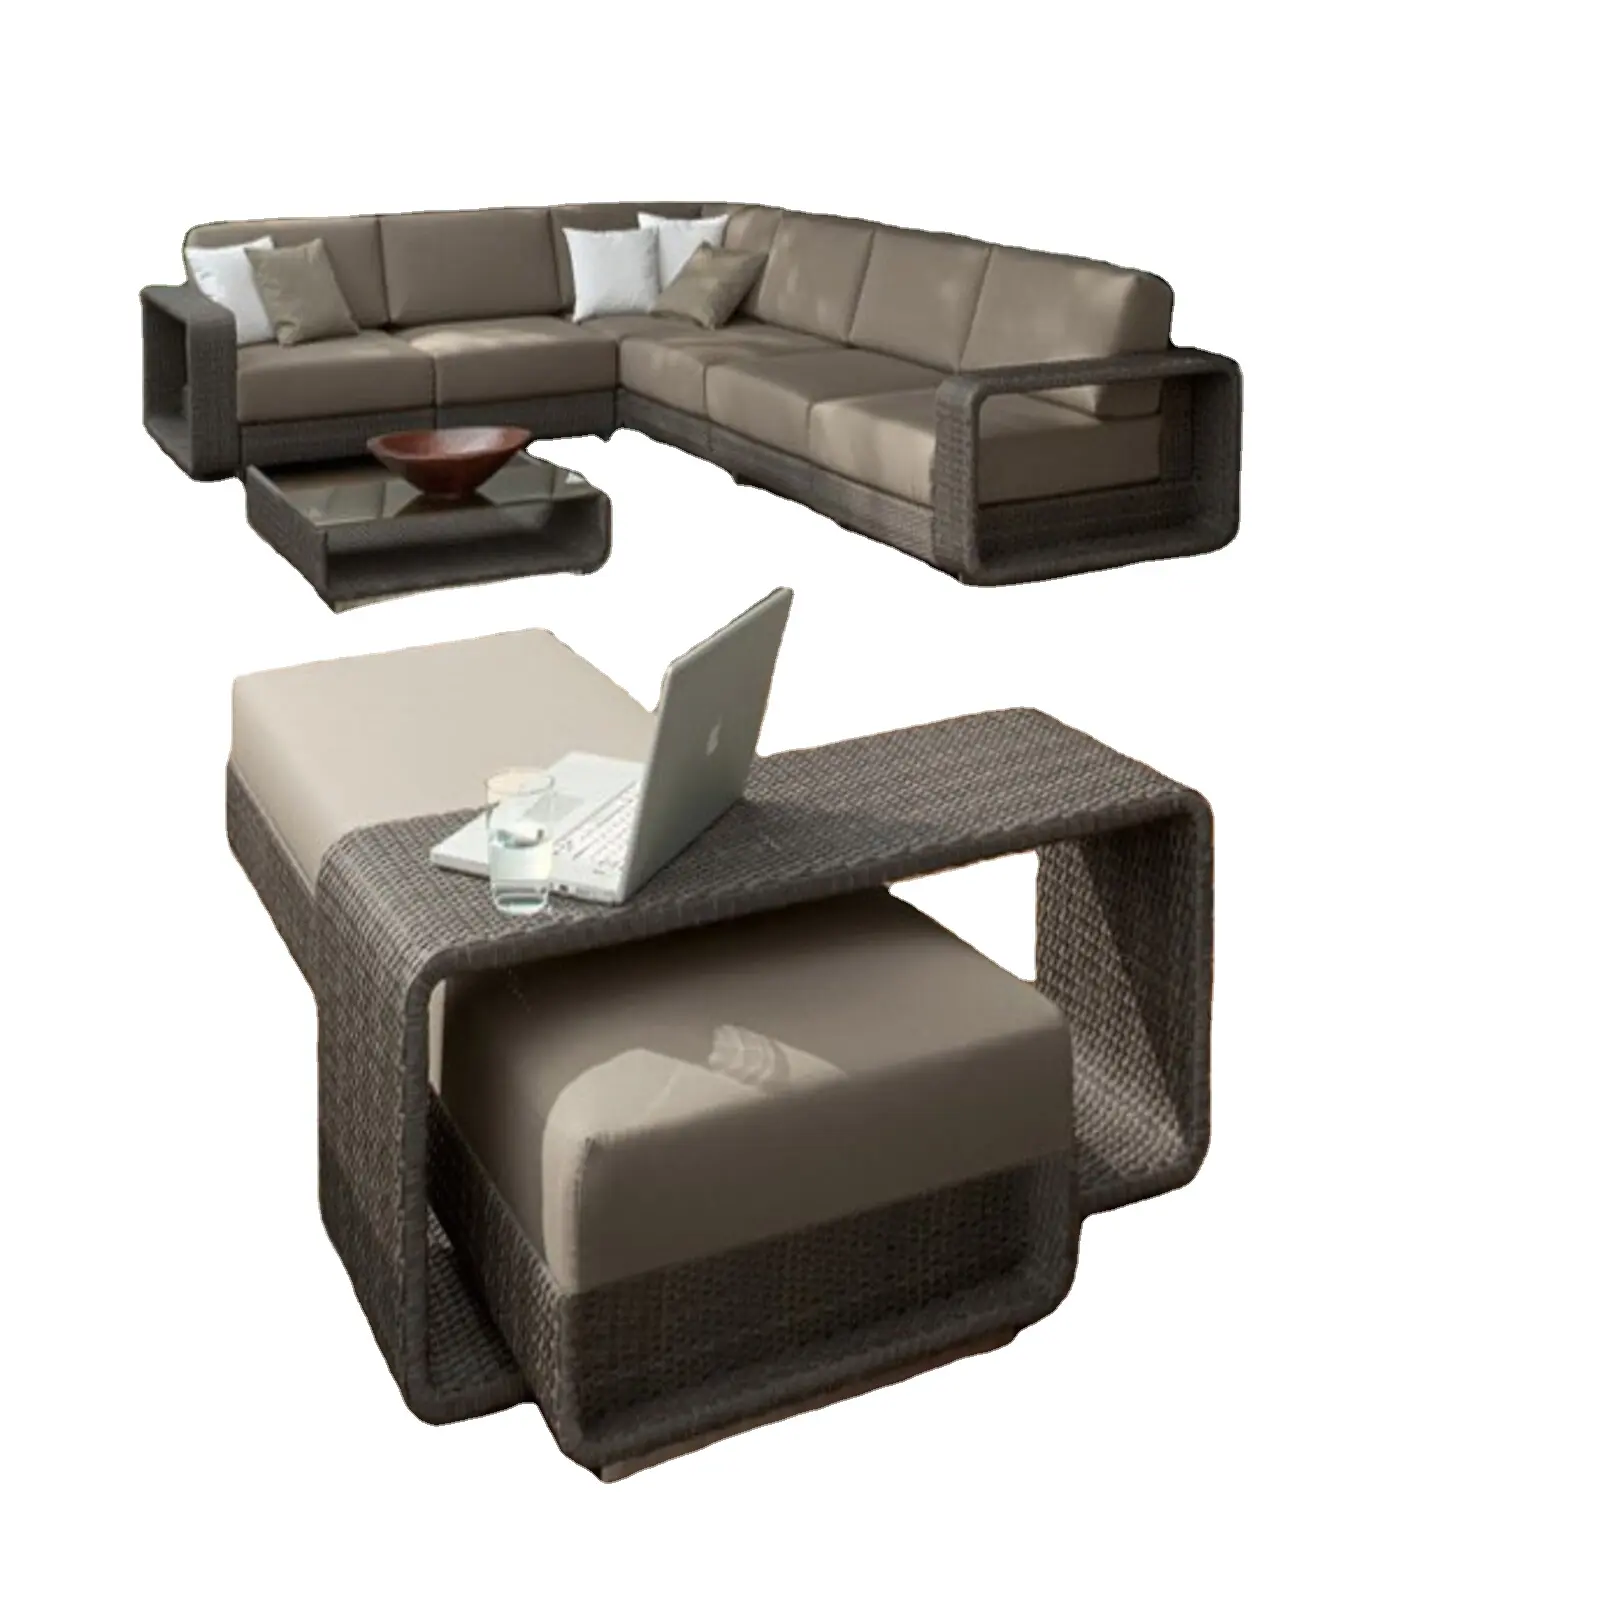 Un ottimo set di divani in rattan per godersi un ampio angolo del patio o del ponte per tutta la tua famiglia e i tuoi amici per godersi questa estate.